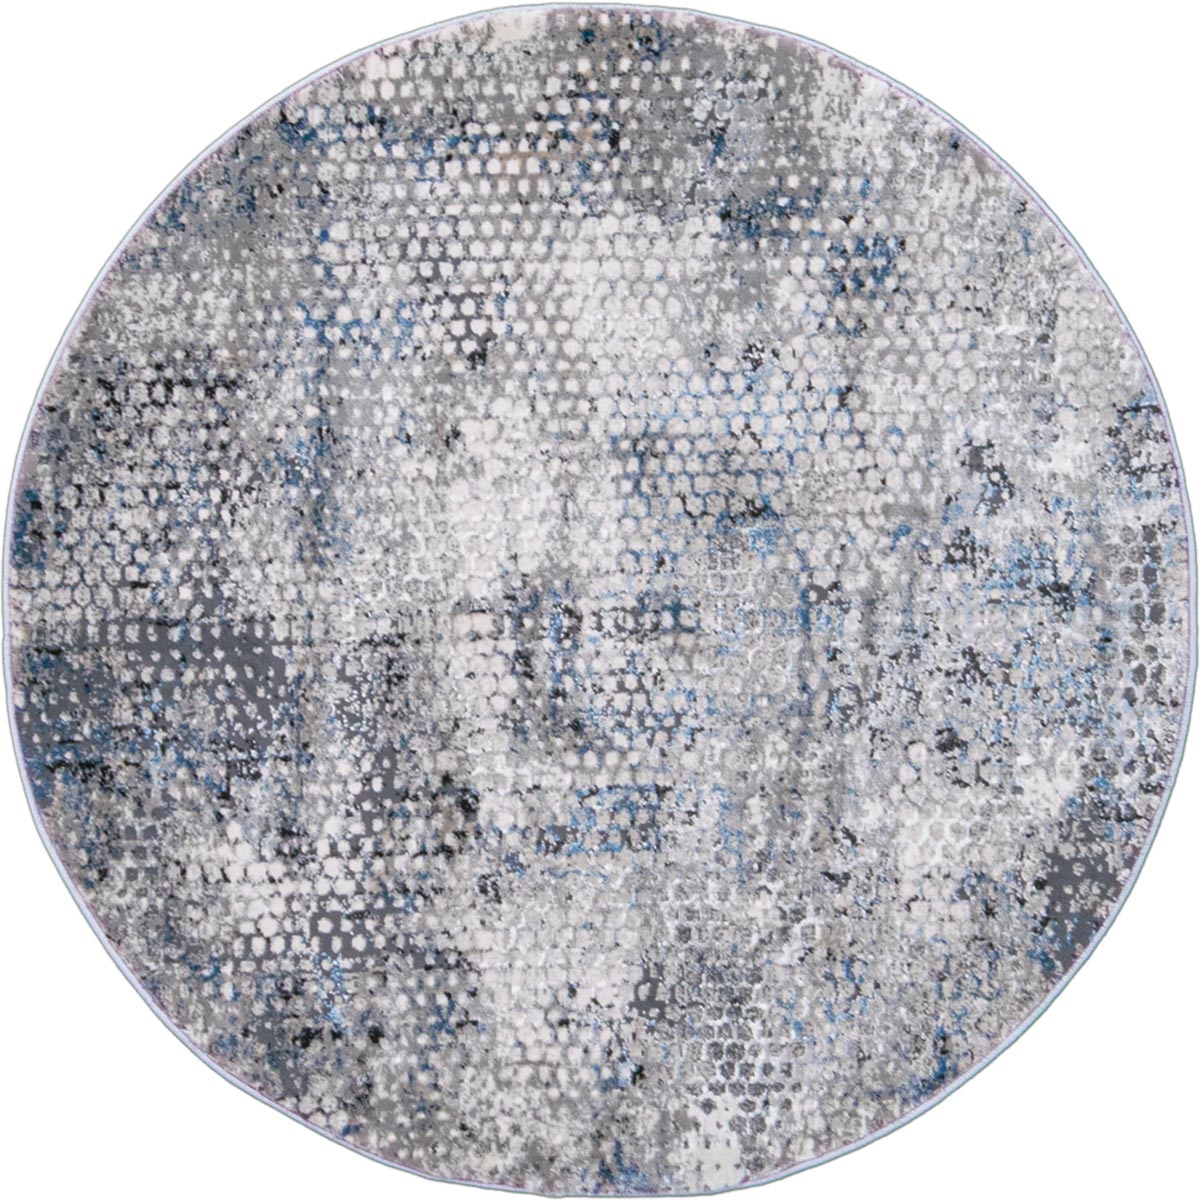 שטיח טורונטו 23 אפור כהה/אפור/כחול עגול | השטיח האדום